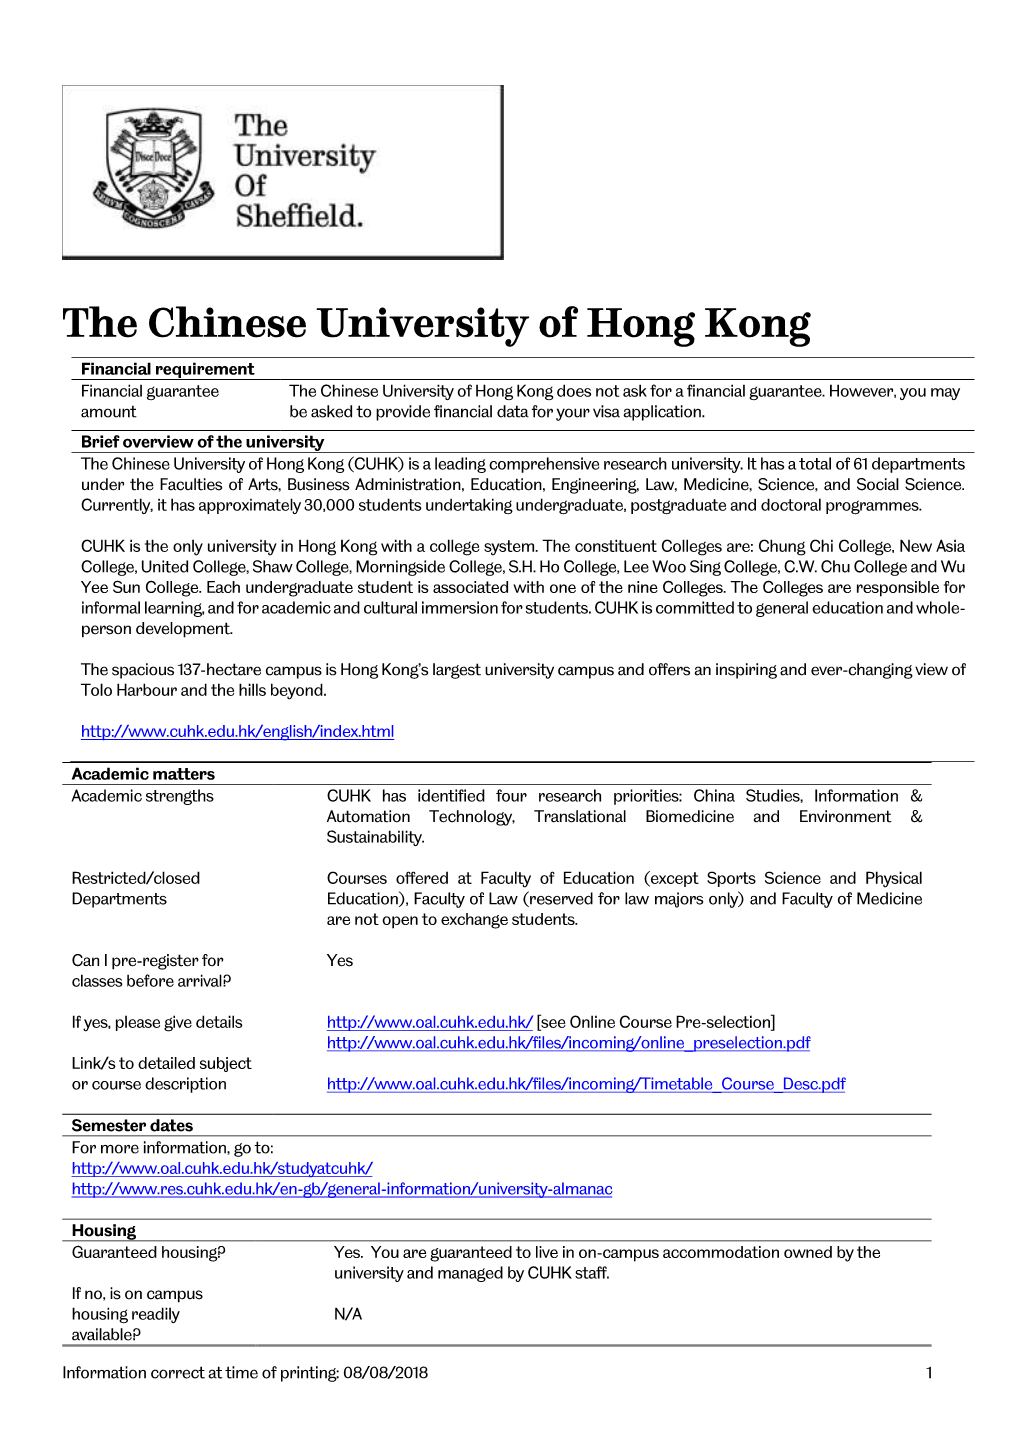 The Chinese University of Hong Kong Financial Requirement Financial Guarantee the Chinese University of Hong Kong Does Not Ask for a Financial Guarantee